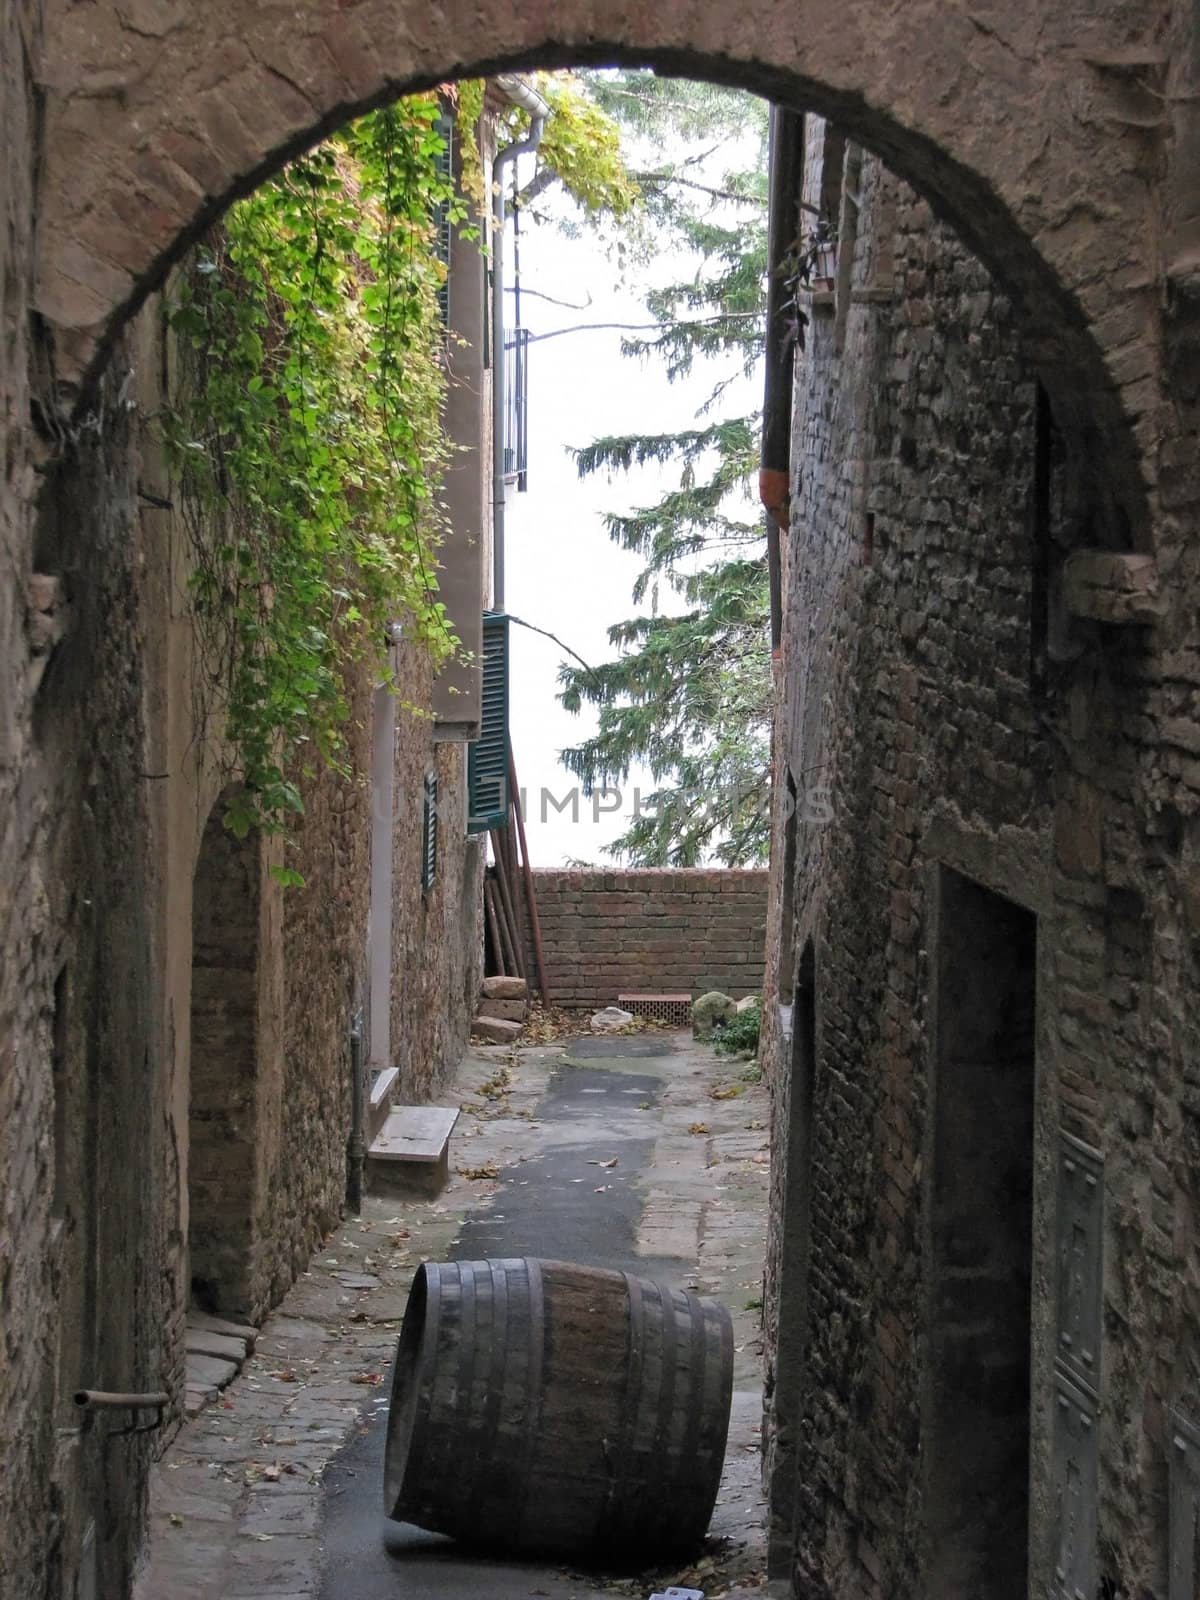 Lone Barrel in an Alley by bellafotosolo